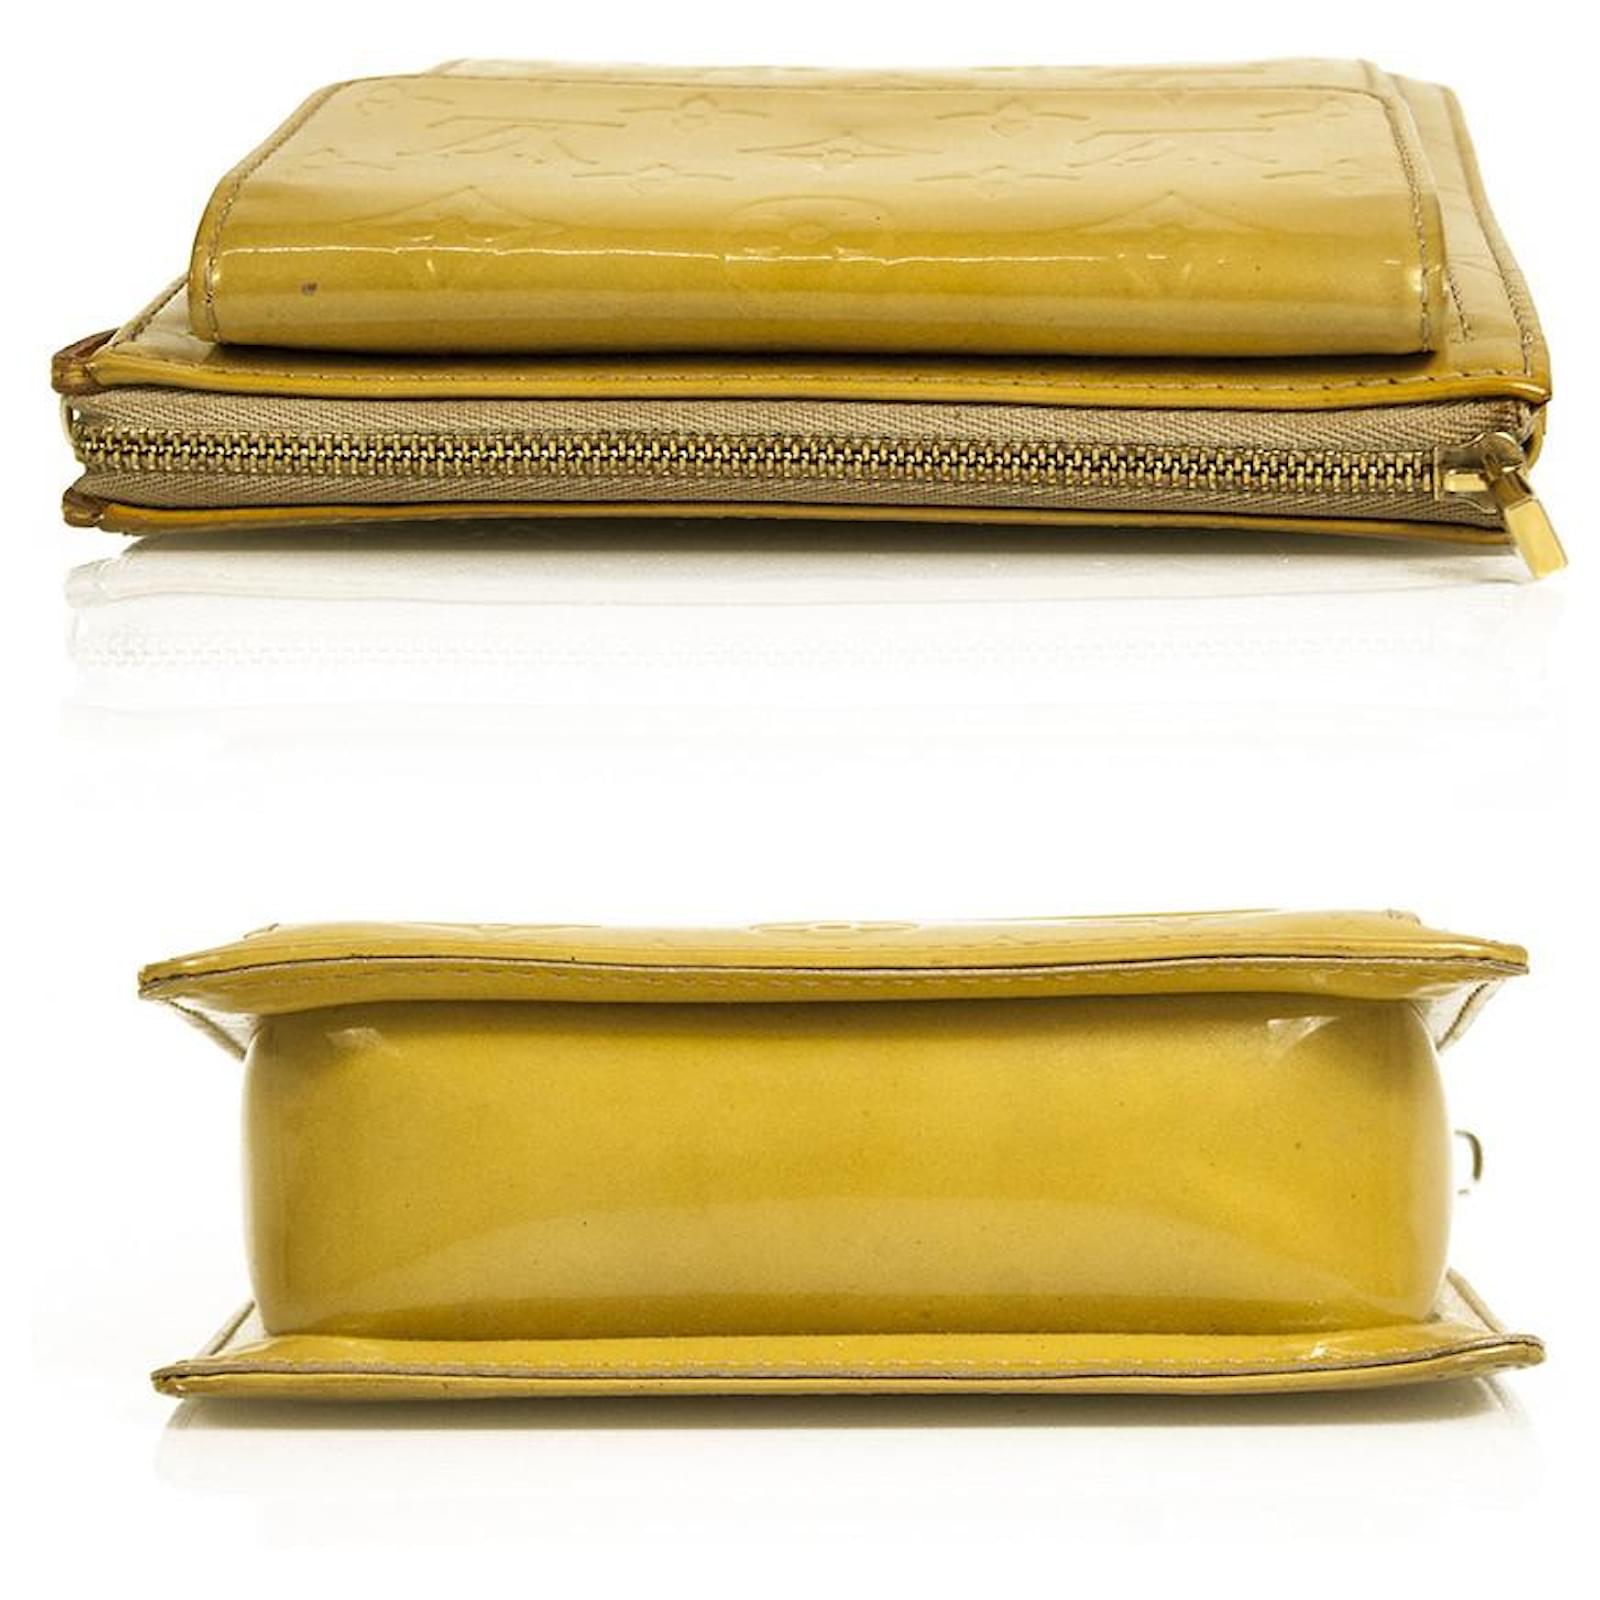 LOUIS VUITTON Monogram Vernis Mott Bag in yellow shoulder bag